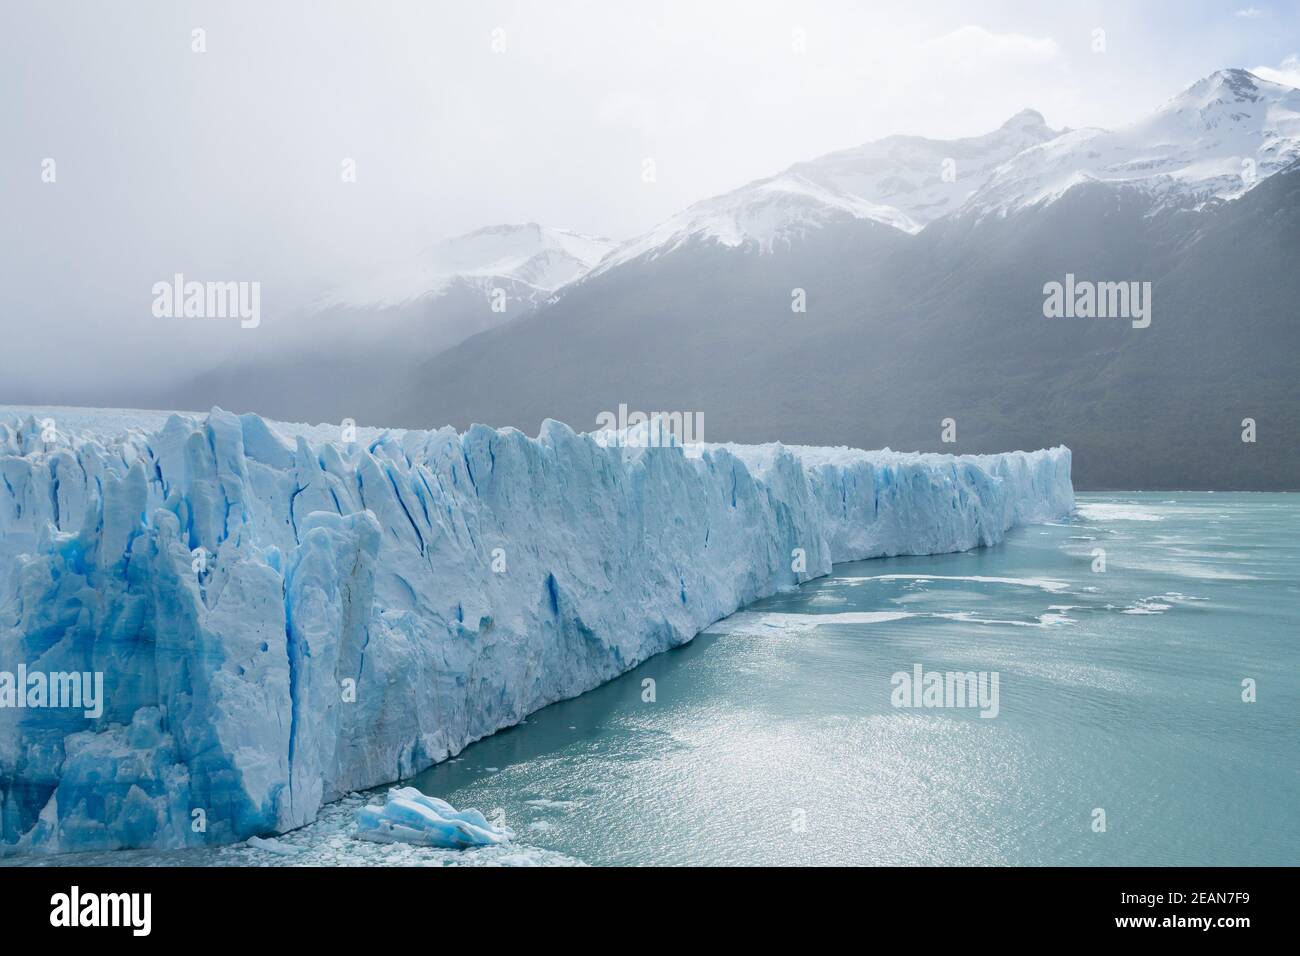 Perito Moreno glacier view, Patagonia landscape, Argentina Stock Photo